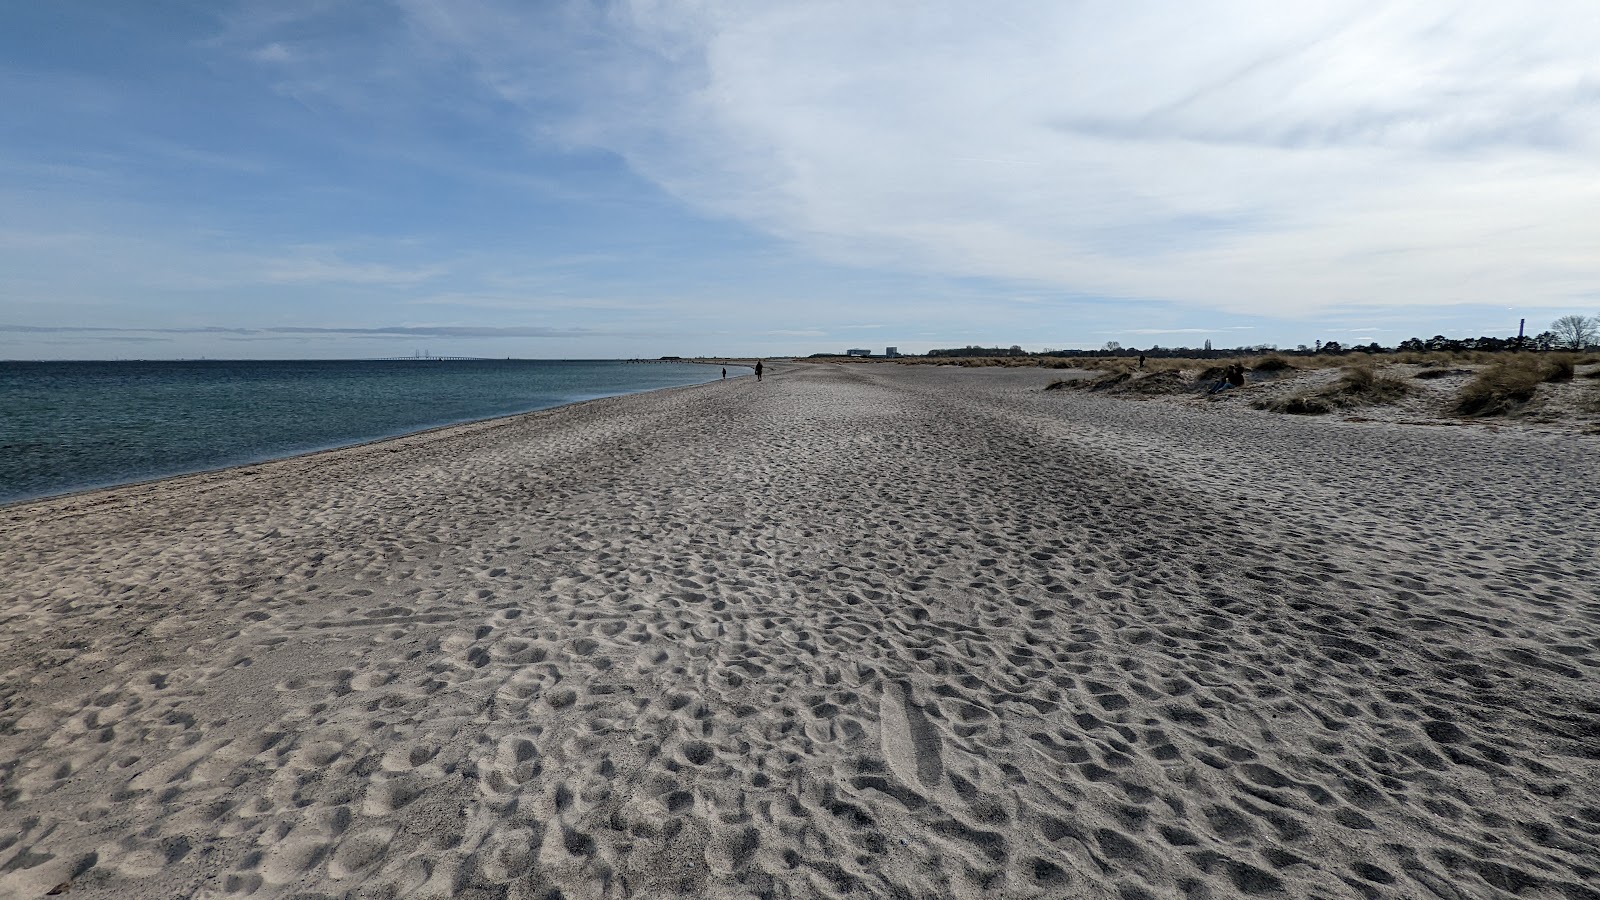 Zdjęcie Amager Beach - popularne miejsce wśród znawców relaksu